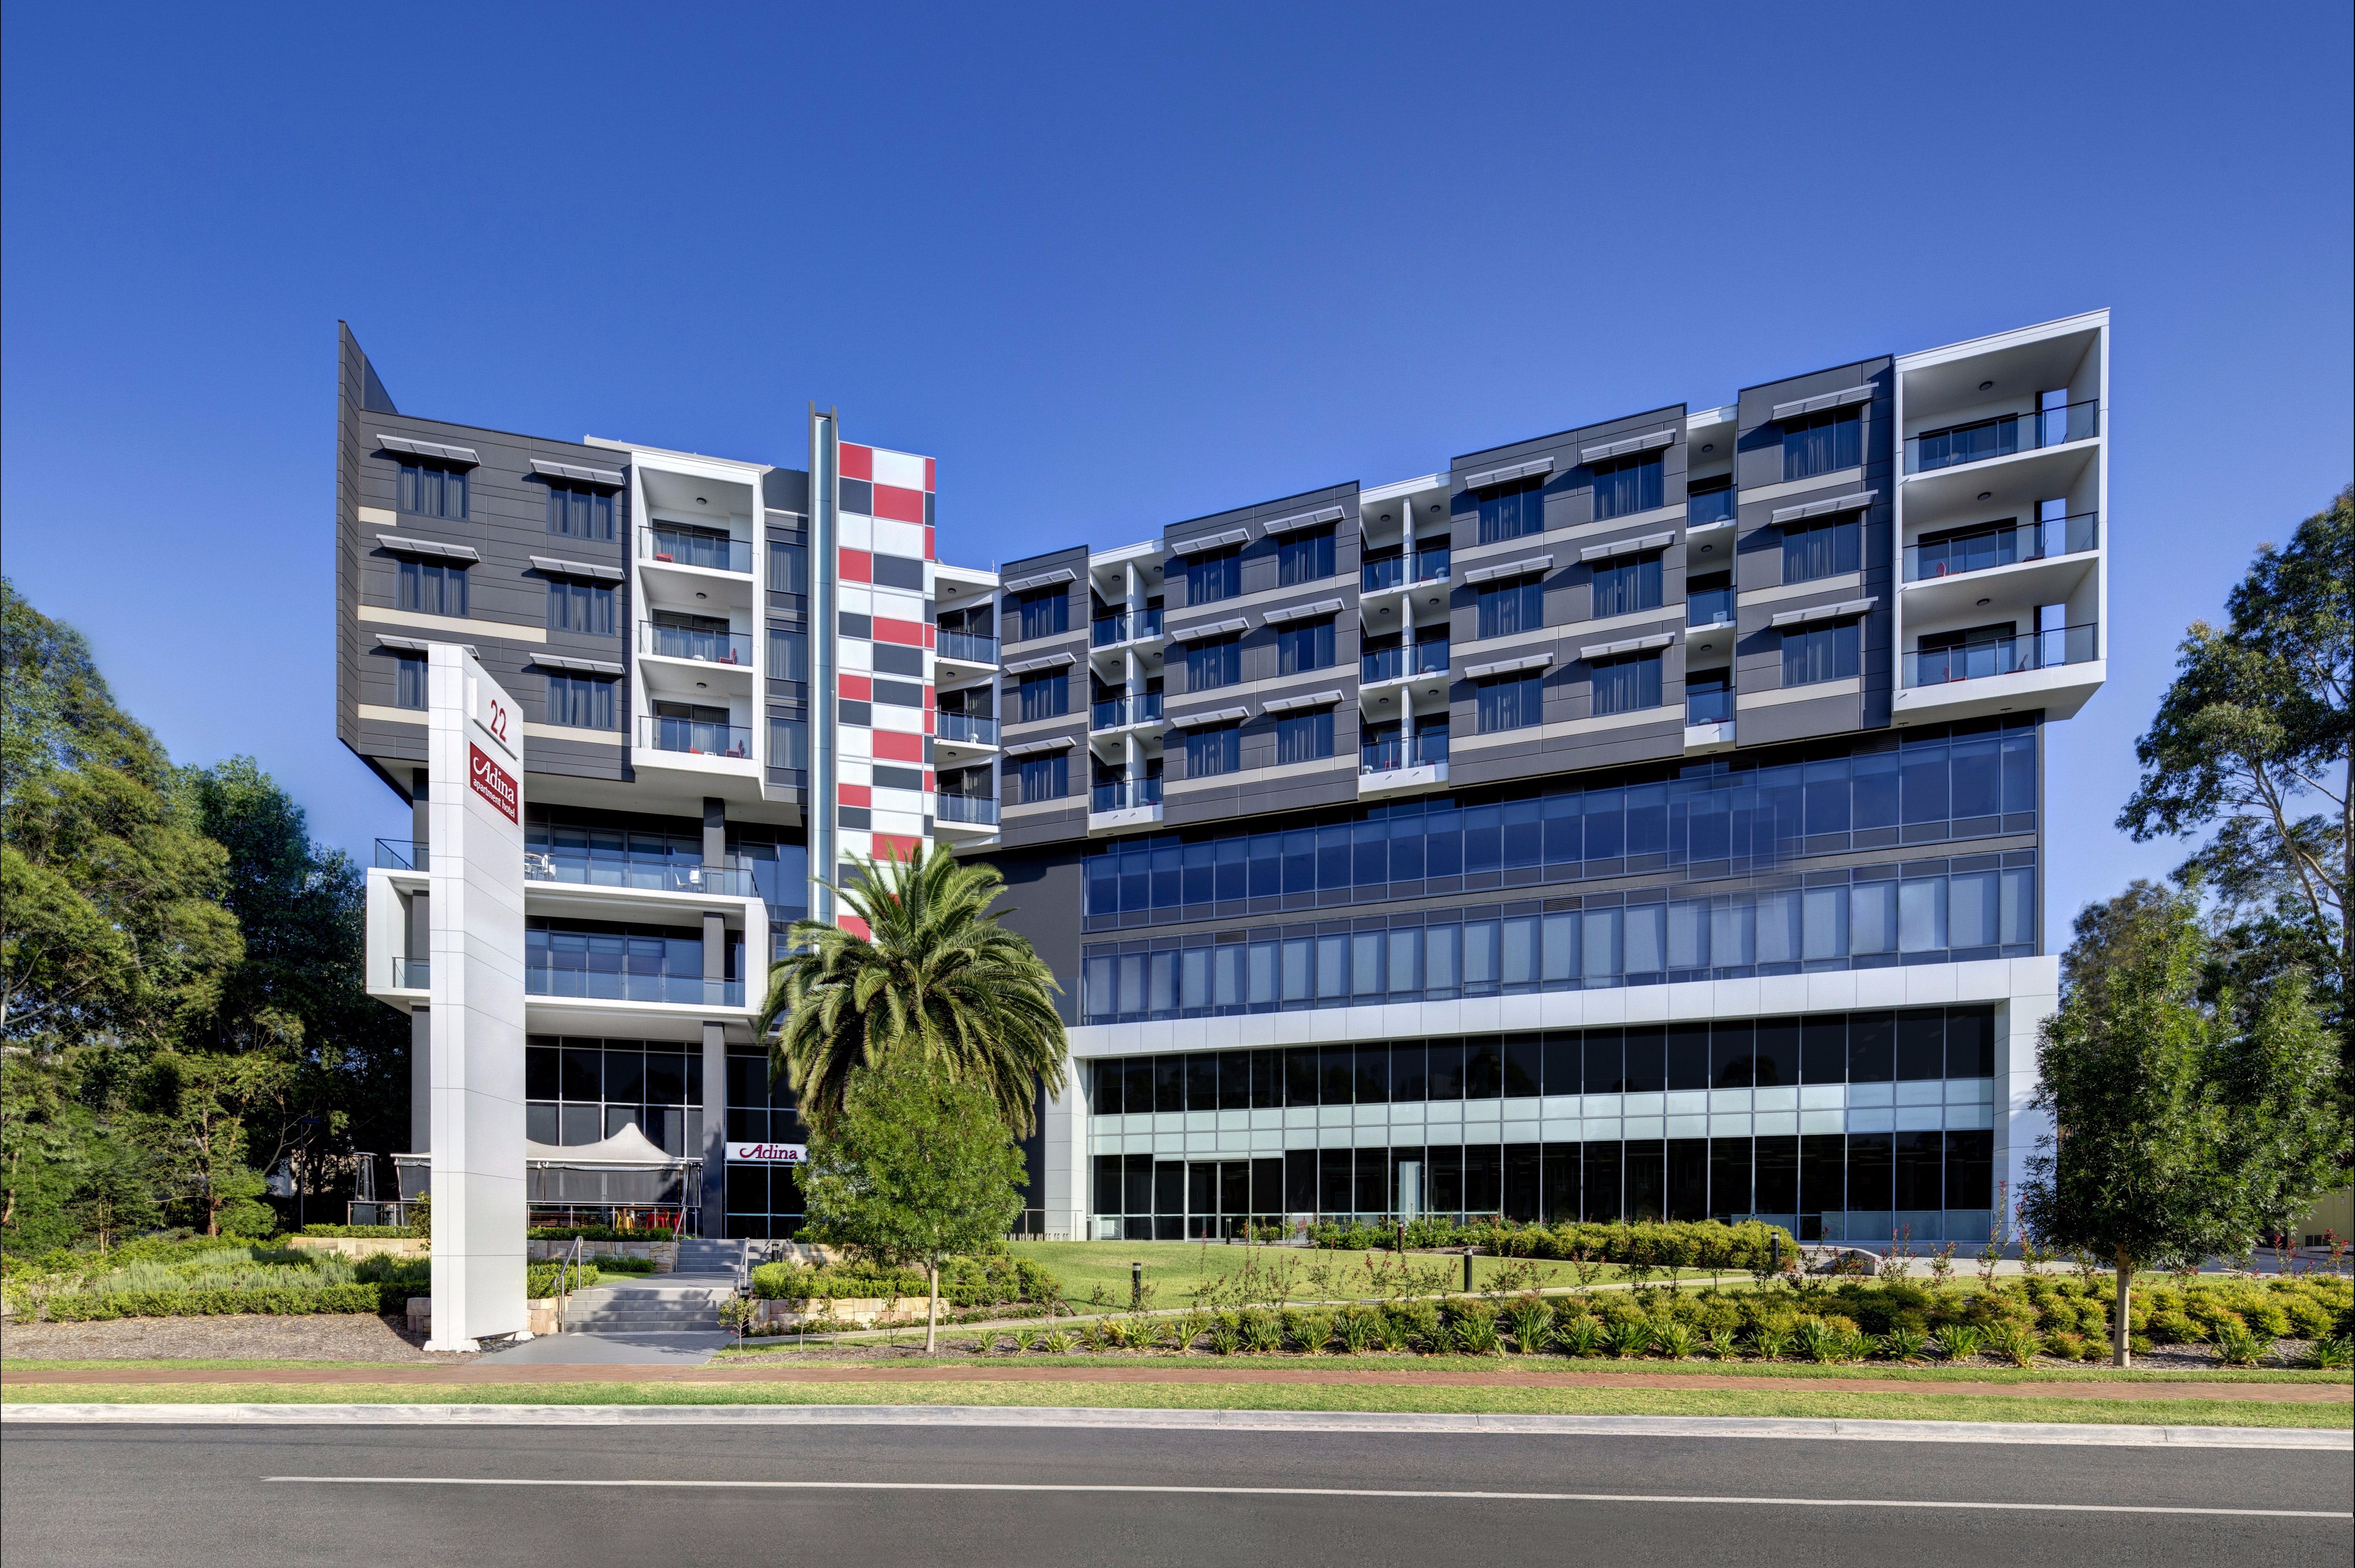 Adina Apartment Hotel Norwest Sydney - Yamba Accommodation